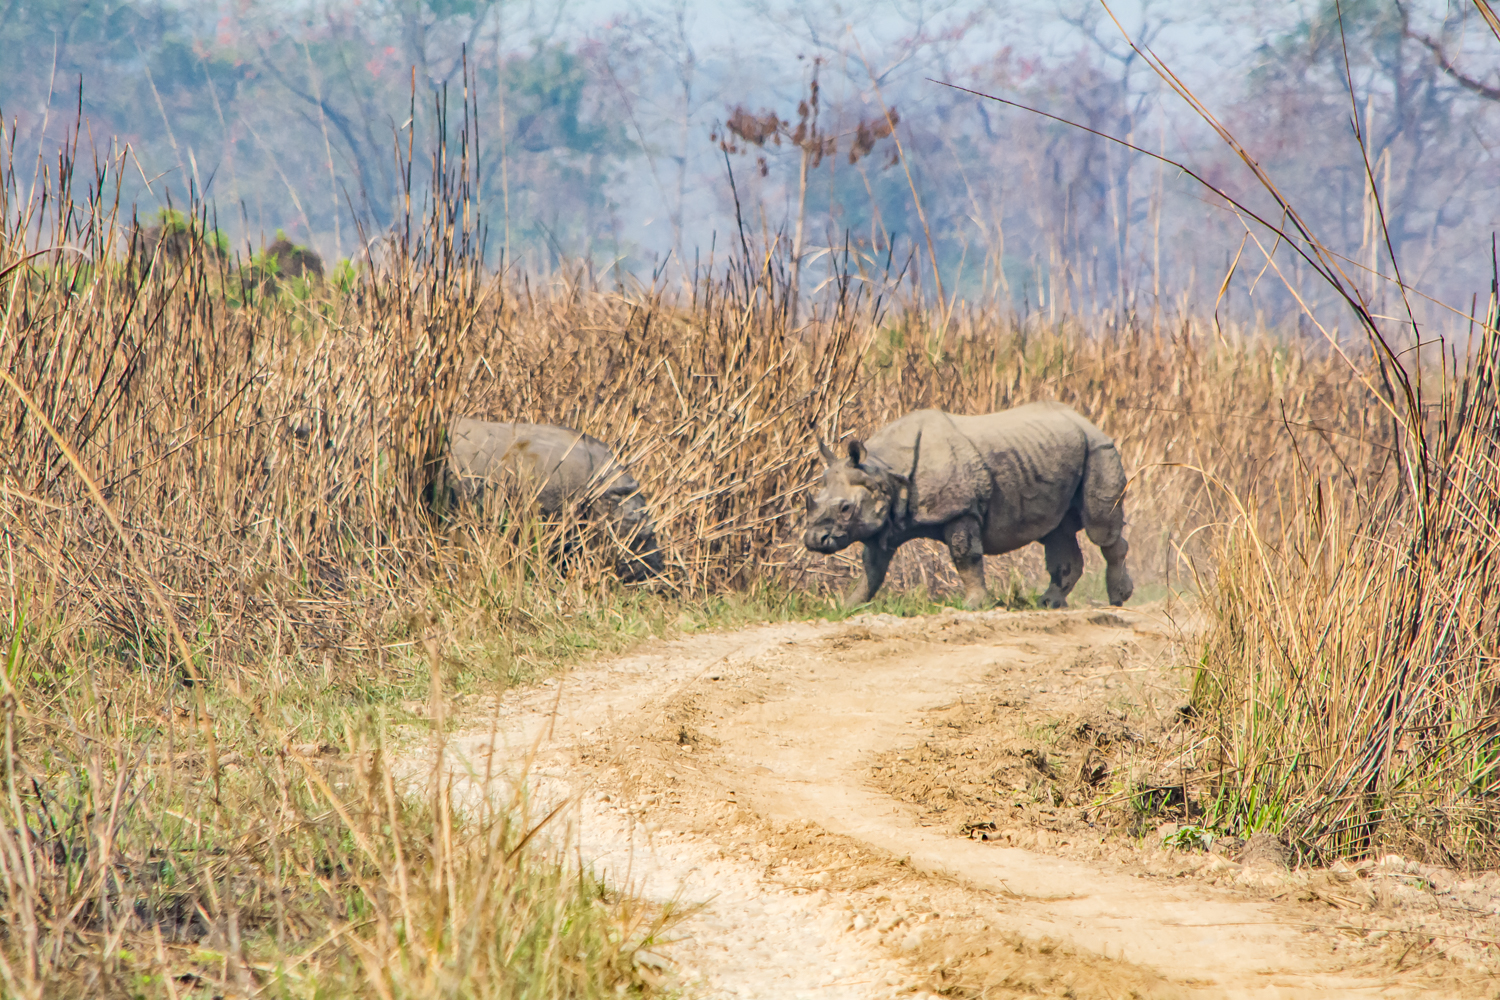 Rhinos Nepal Vagabond Way